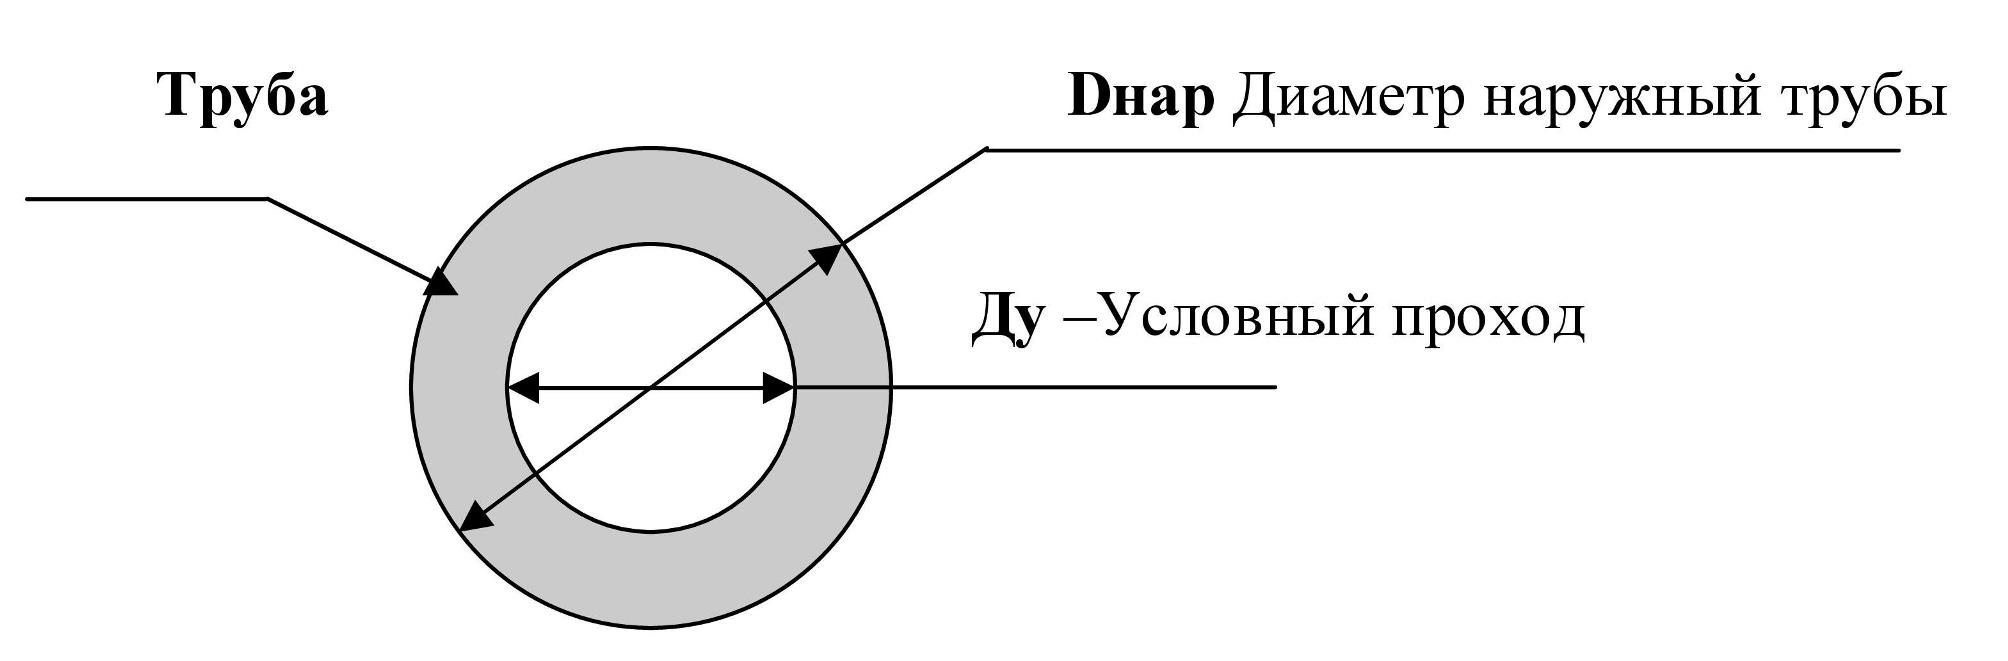 Как подобрать техническую изоляцию для труб в зависимости от диаметра